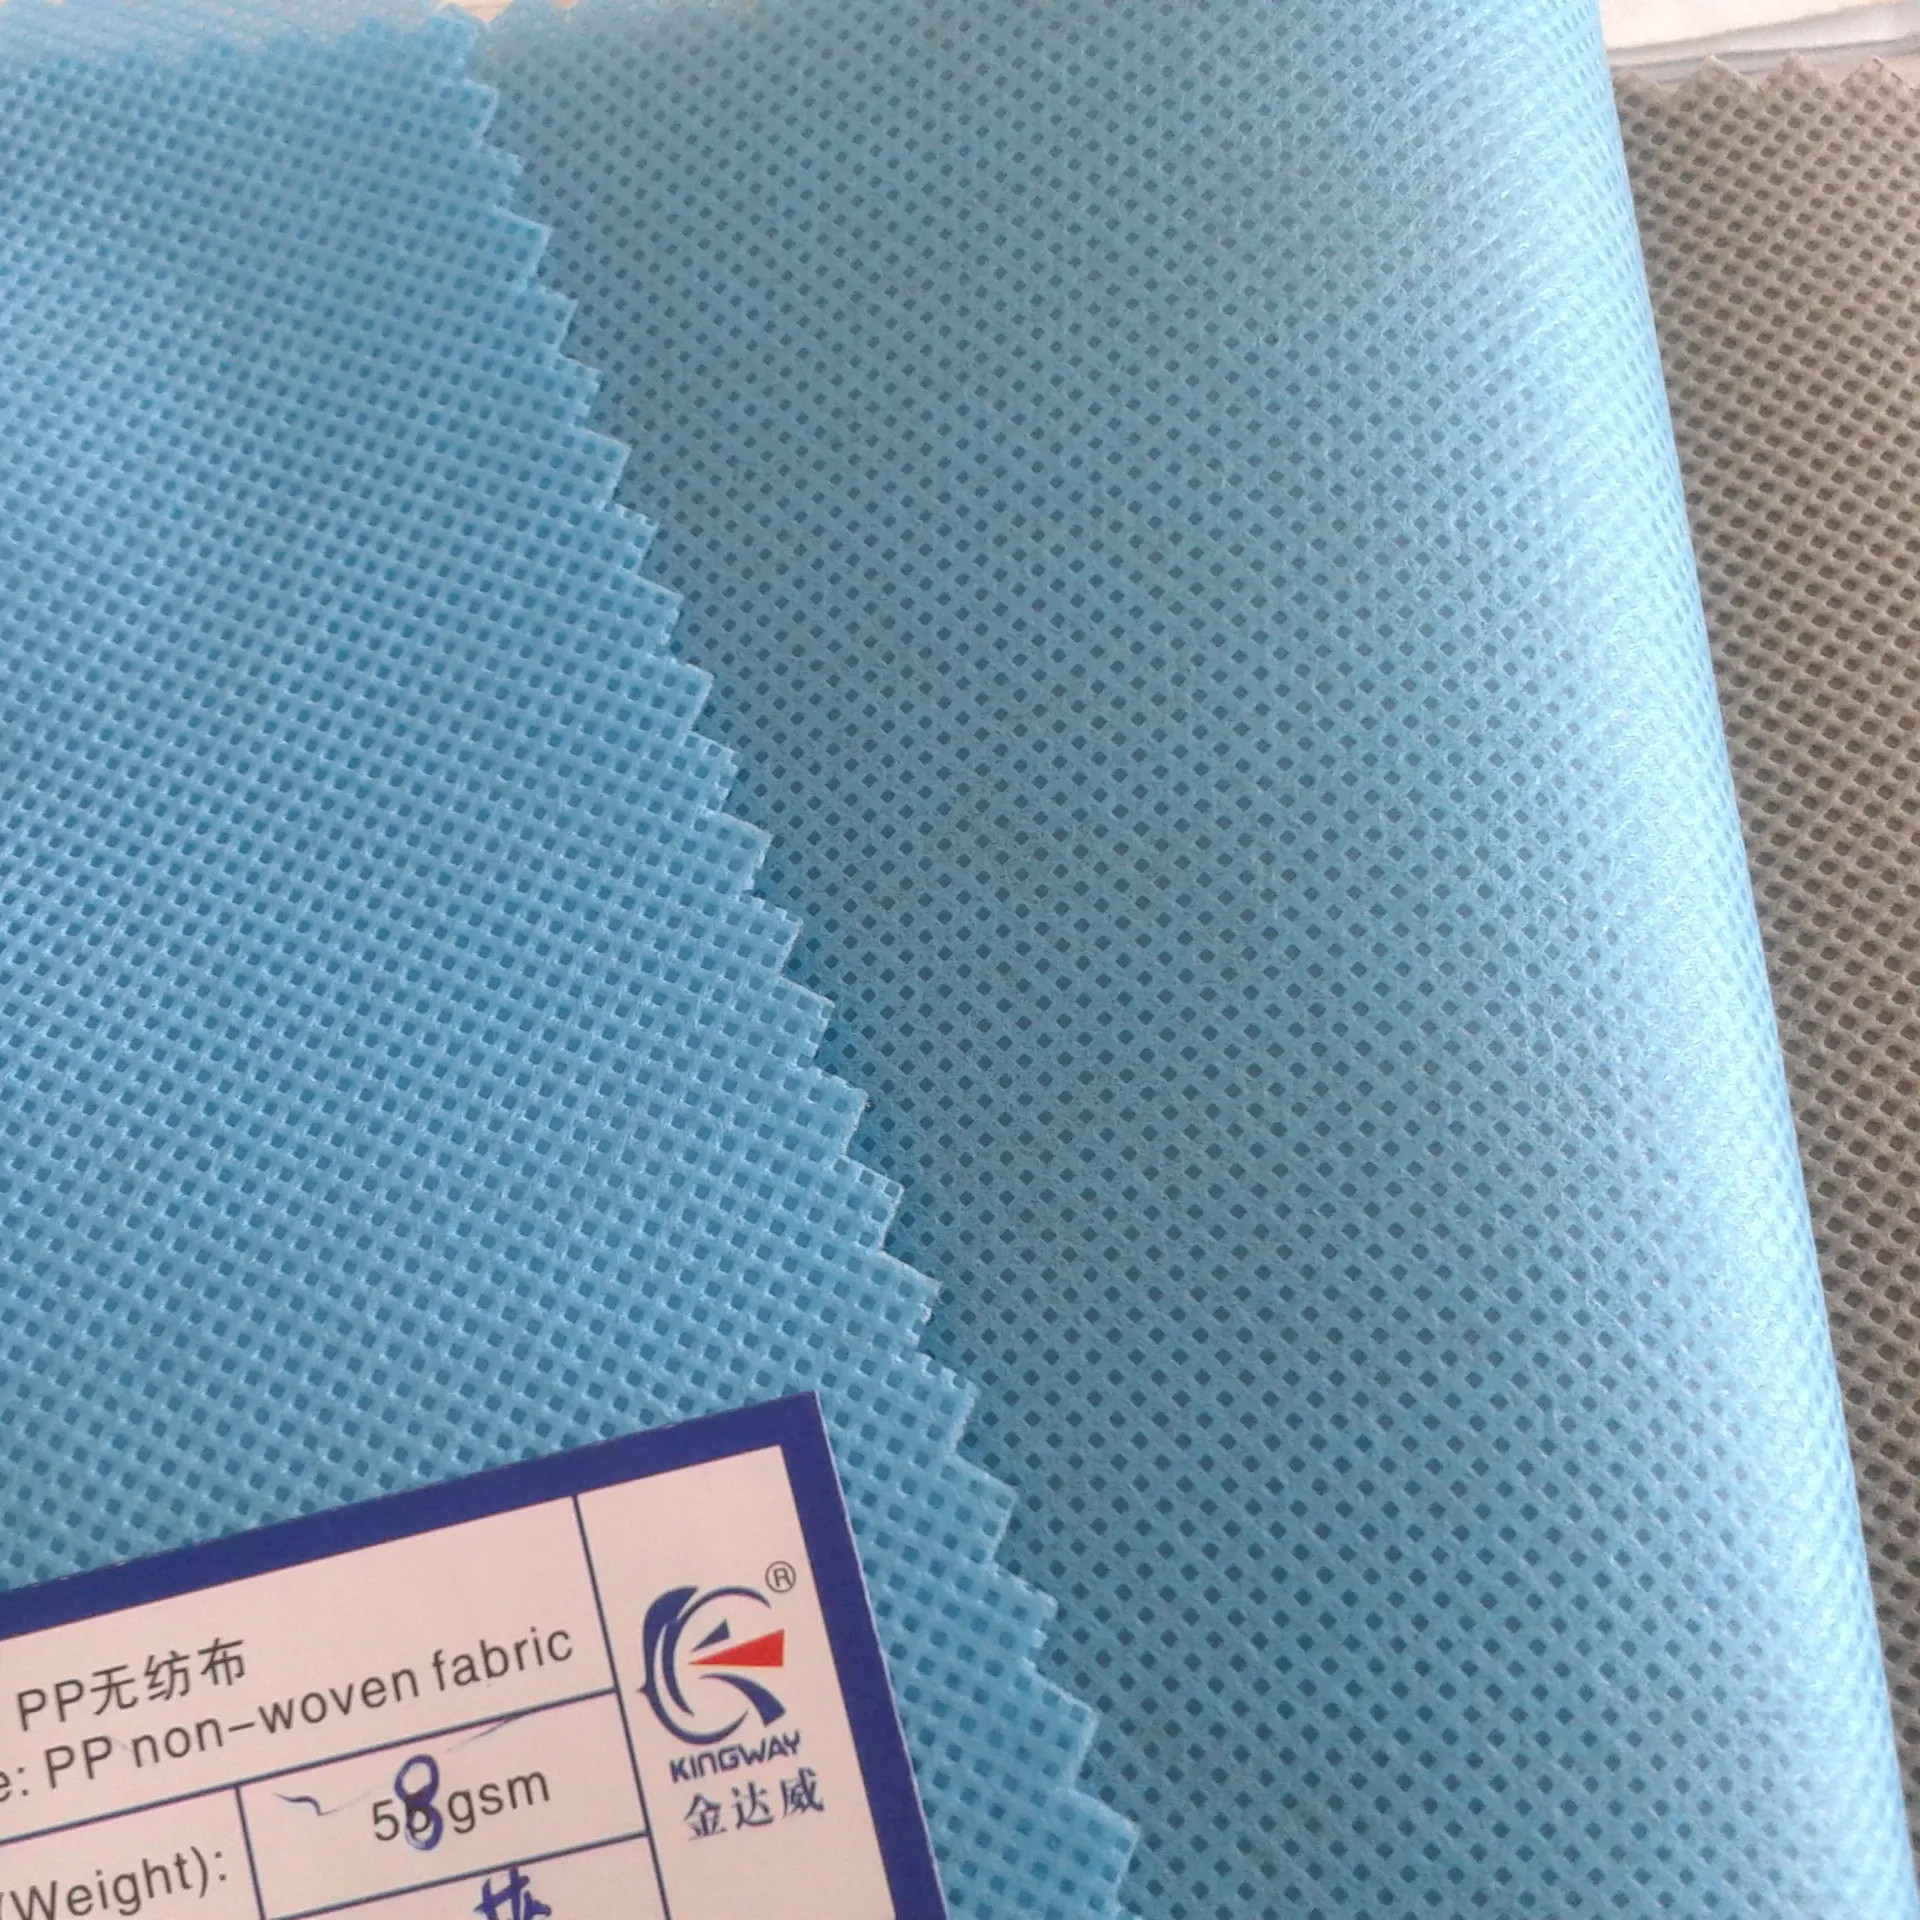 35gsmブルー不織布/100% ppスパンボンド生地/マスクバッグやソファシューズの包装に使用素材